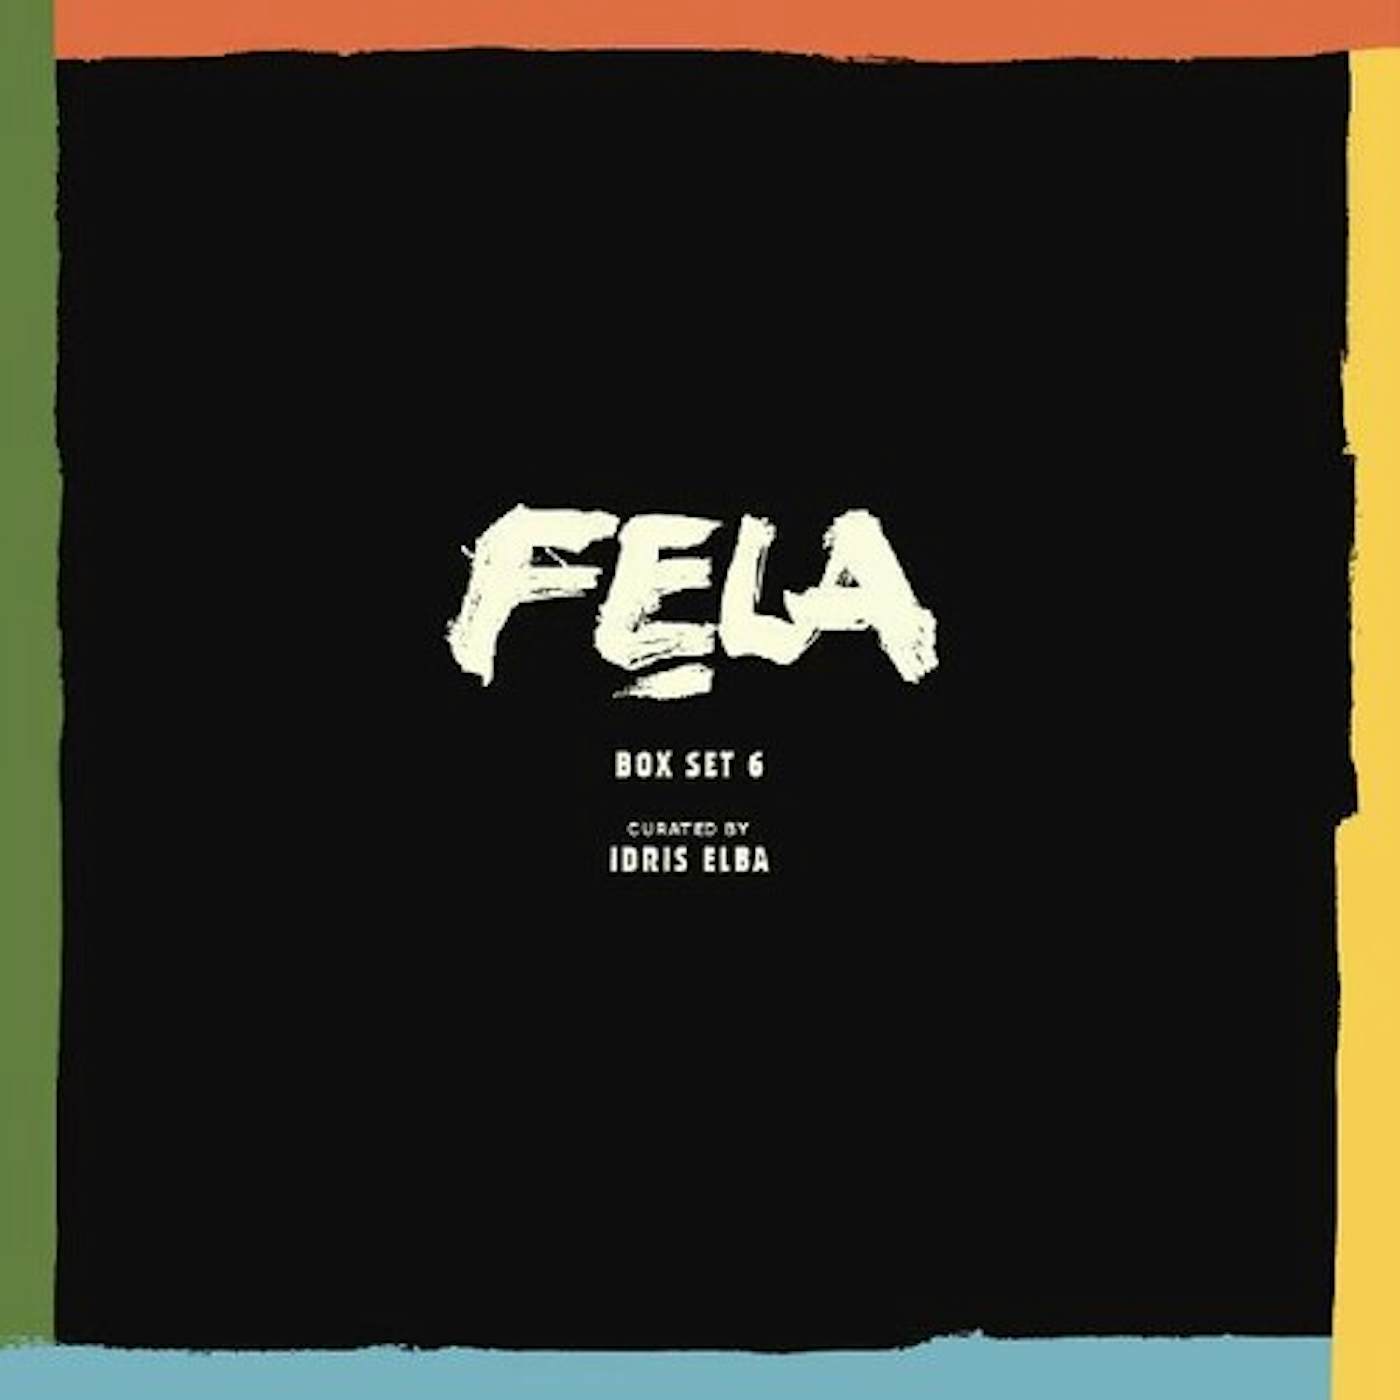 Fela Kuti BOX SET #6 CURATED BY IDRIS ELBA Vinyl Record